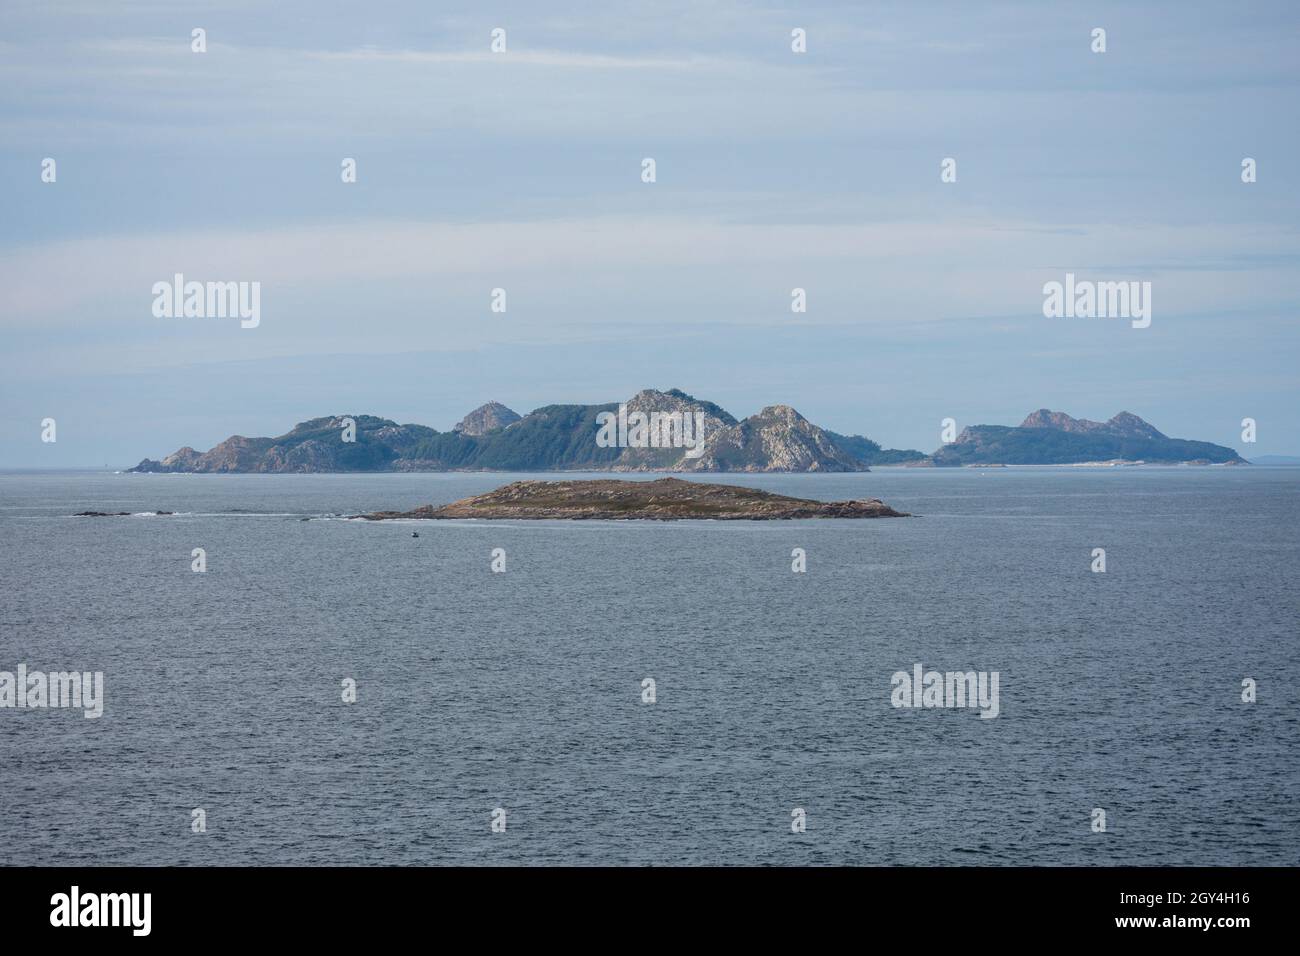 Cíes Islands, three islands forming the Atlantic islands, national park, Ria de Vigo estuary, Galicia, Spain Stock Photo